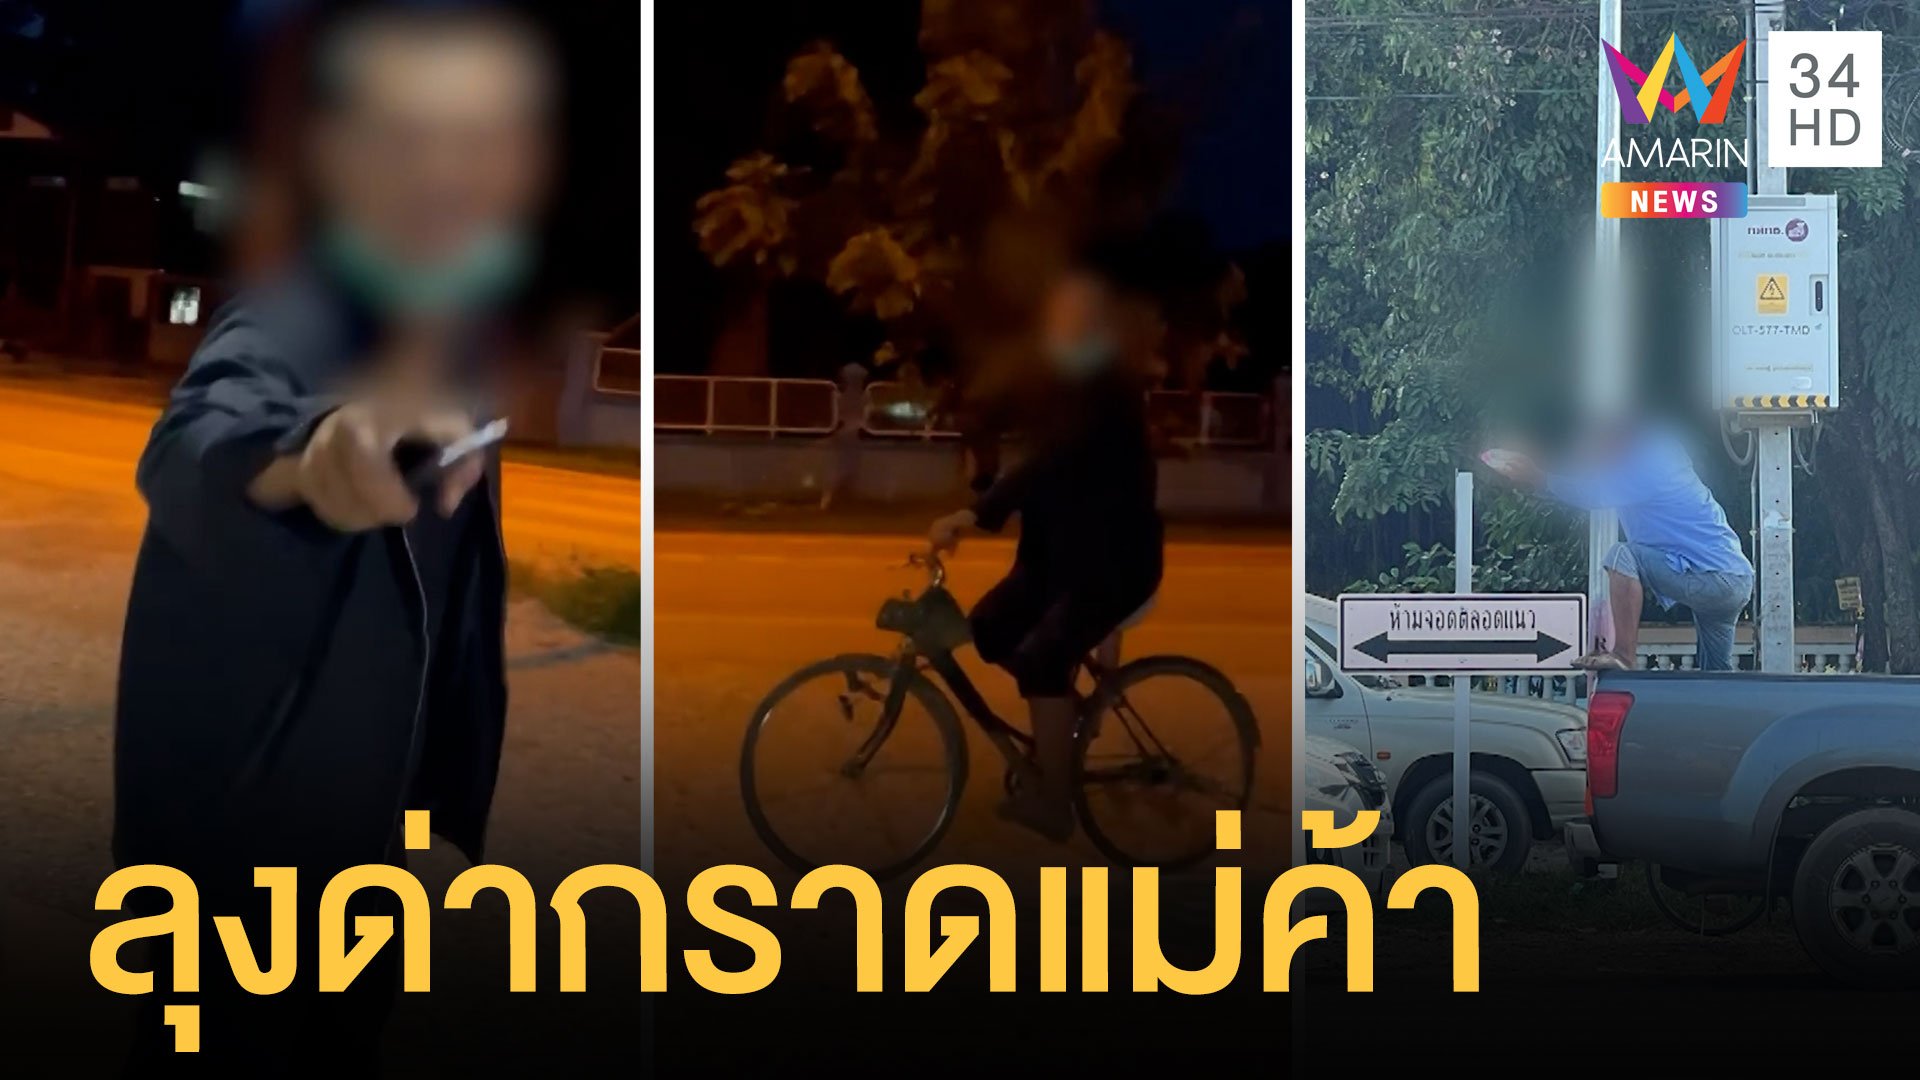 ลุงปั่นจักรยานด่ากราดแม่ค้า ต่อยเด็กแถมขอมีเซ็กส์ชาวบ้าน | ข่าวเที่ยงอมรินทร์ | 2 ธ.ค. 64 | AMARIN TVHD34